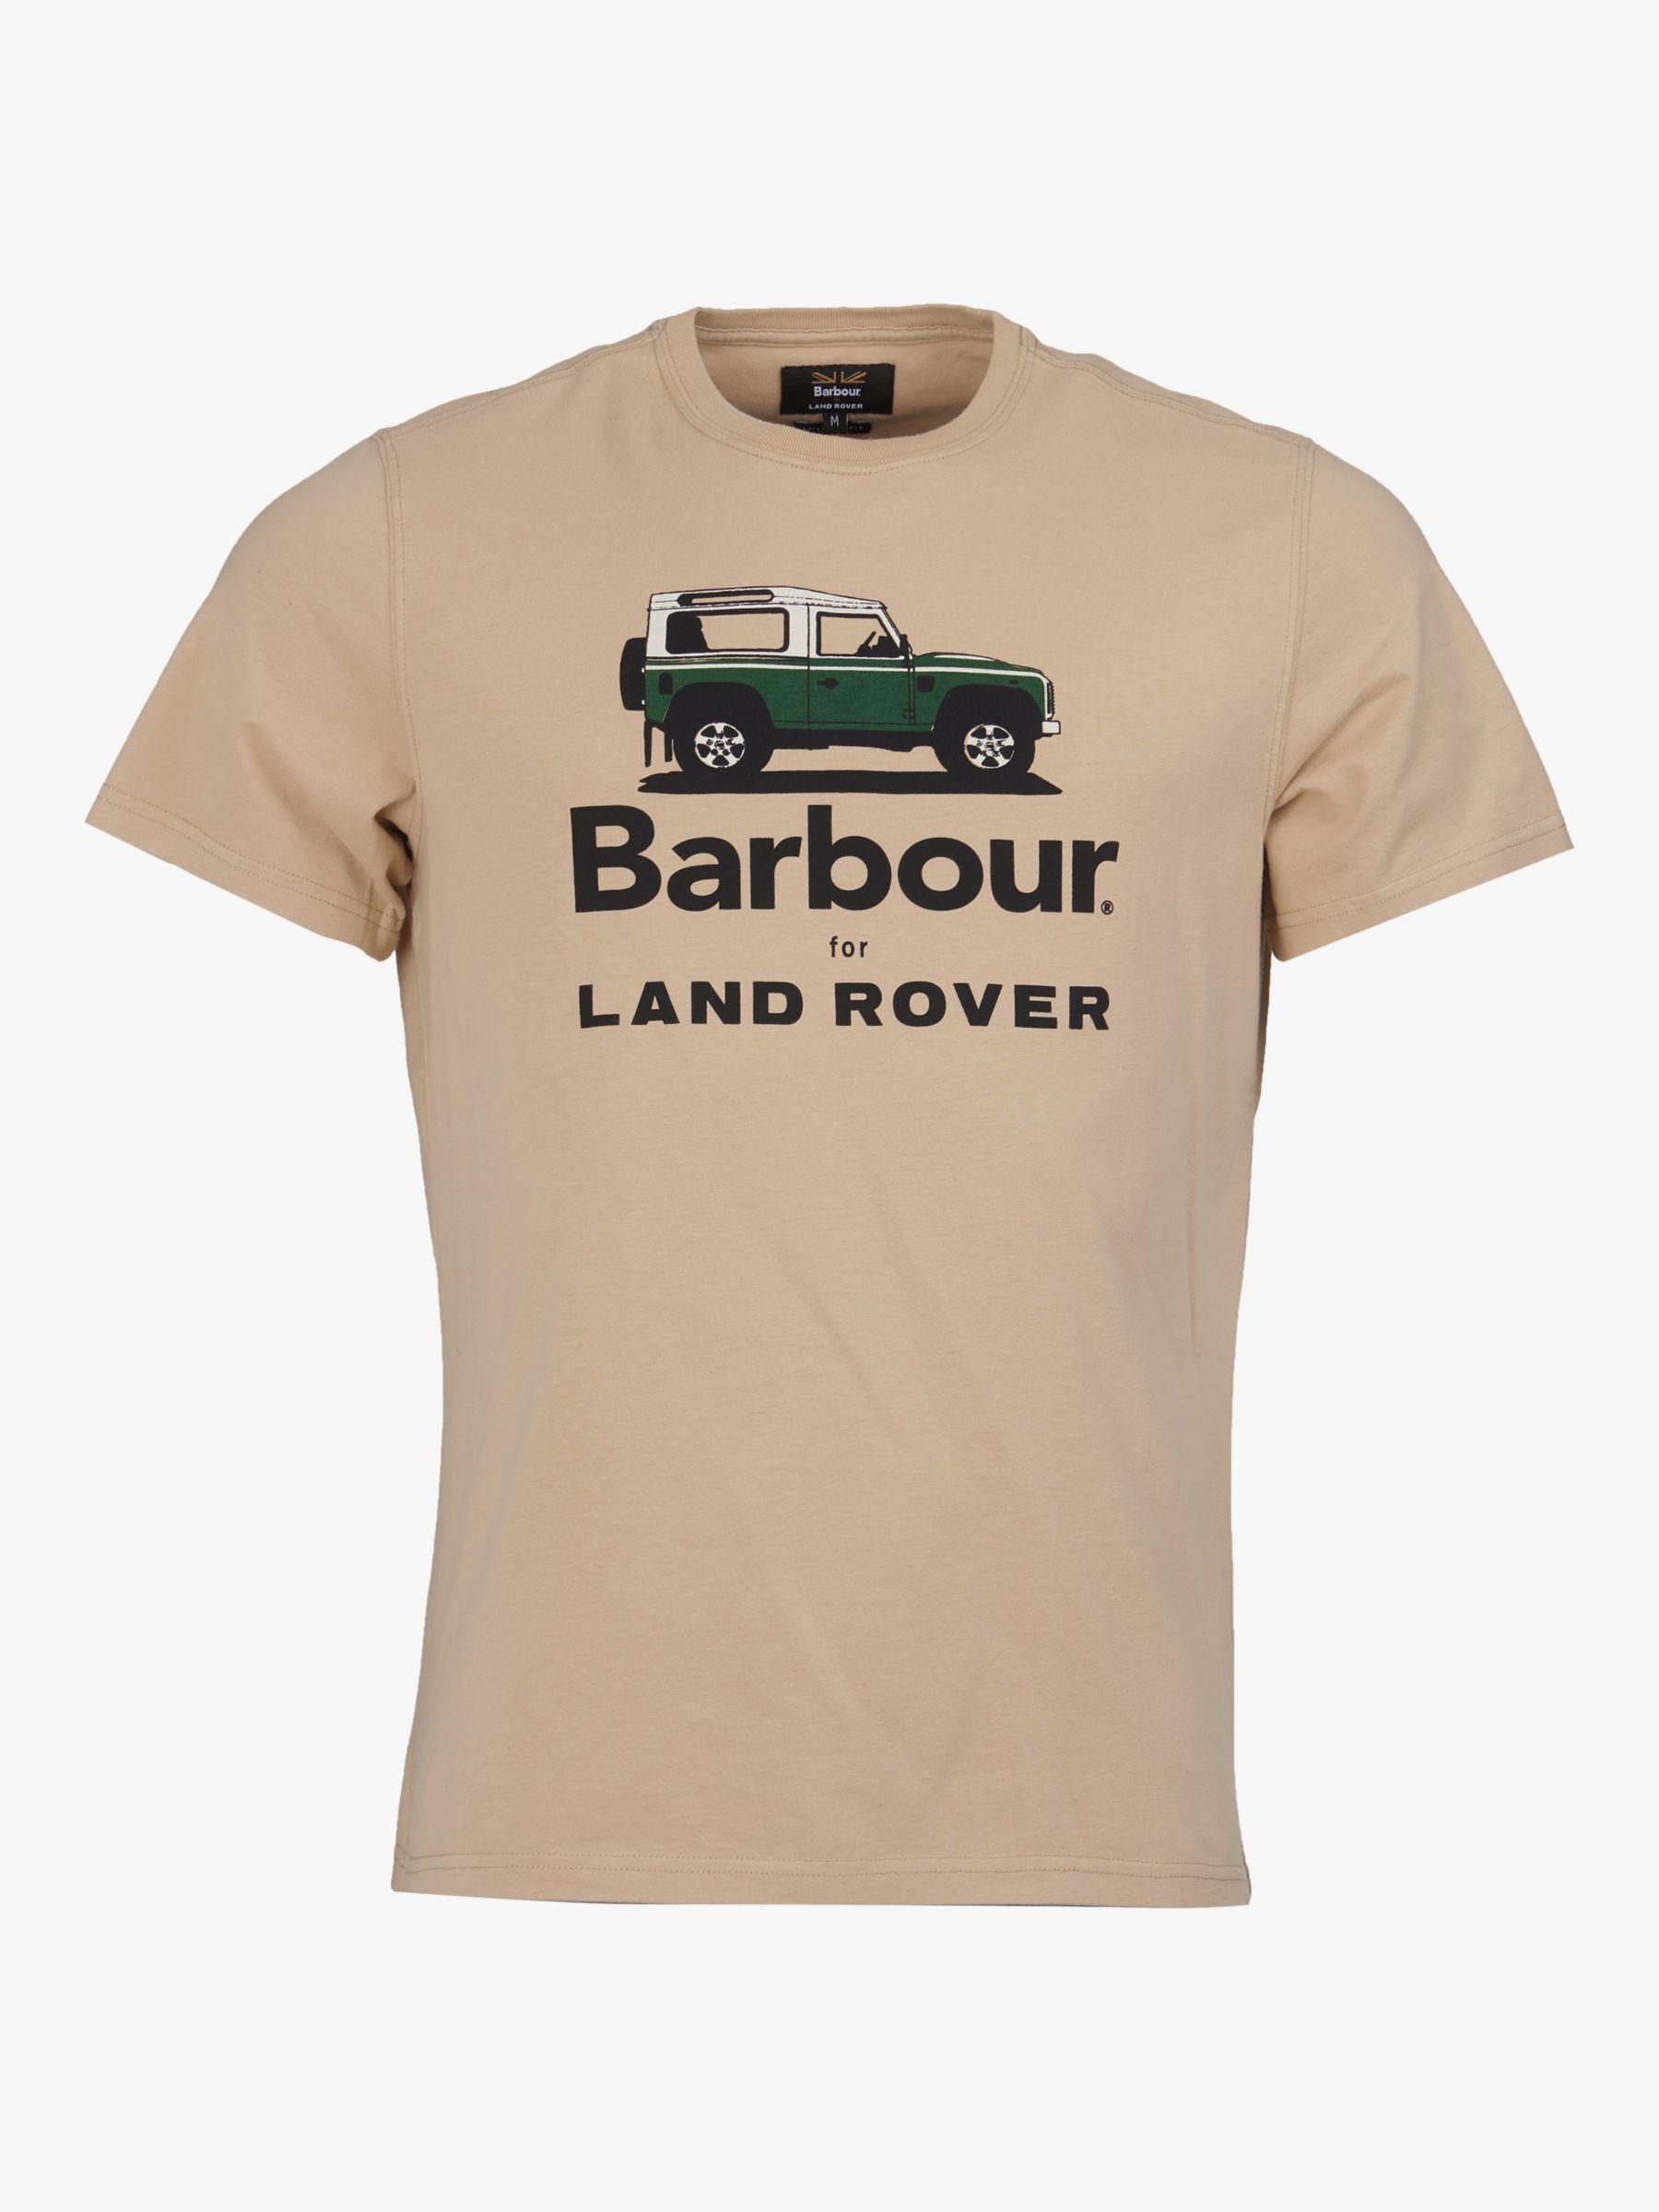 Barbour Land Rover Defender T Shirt Hot Sale, 57% OFF |  www.colegiogamarra.com